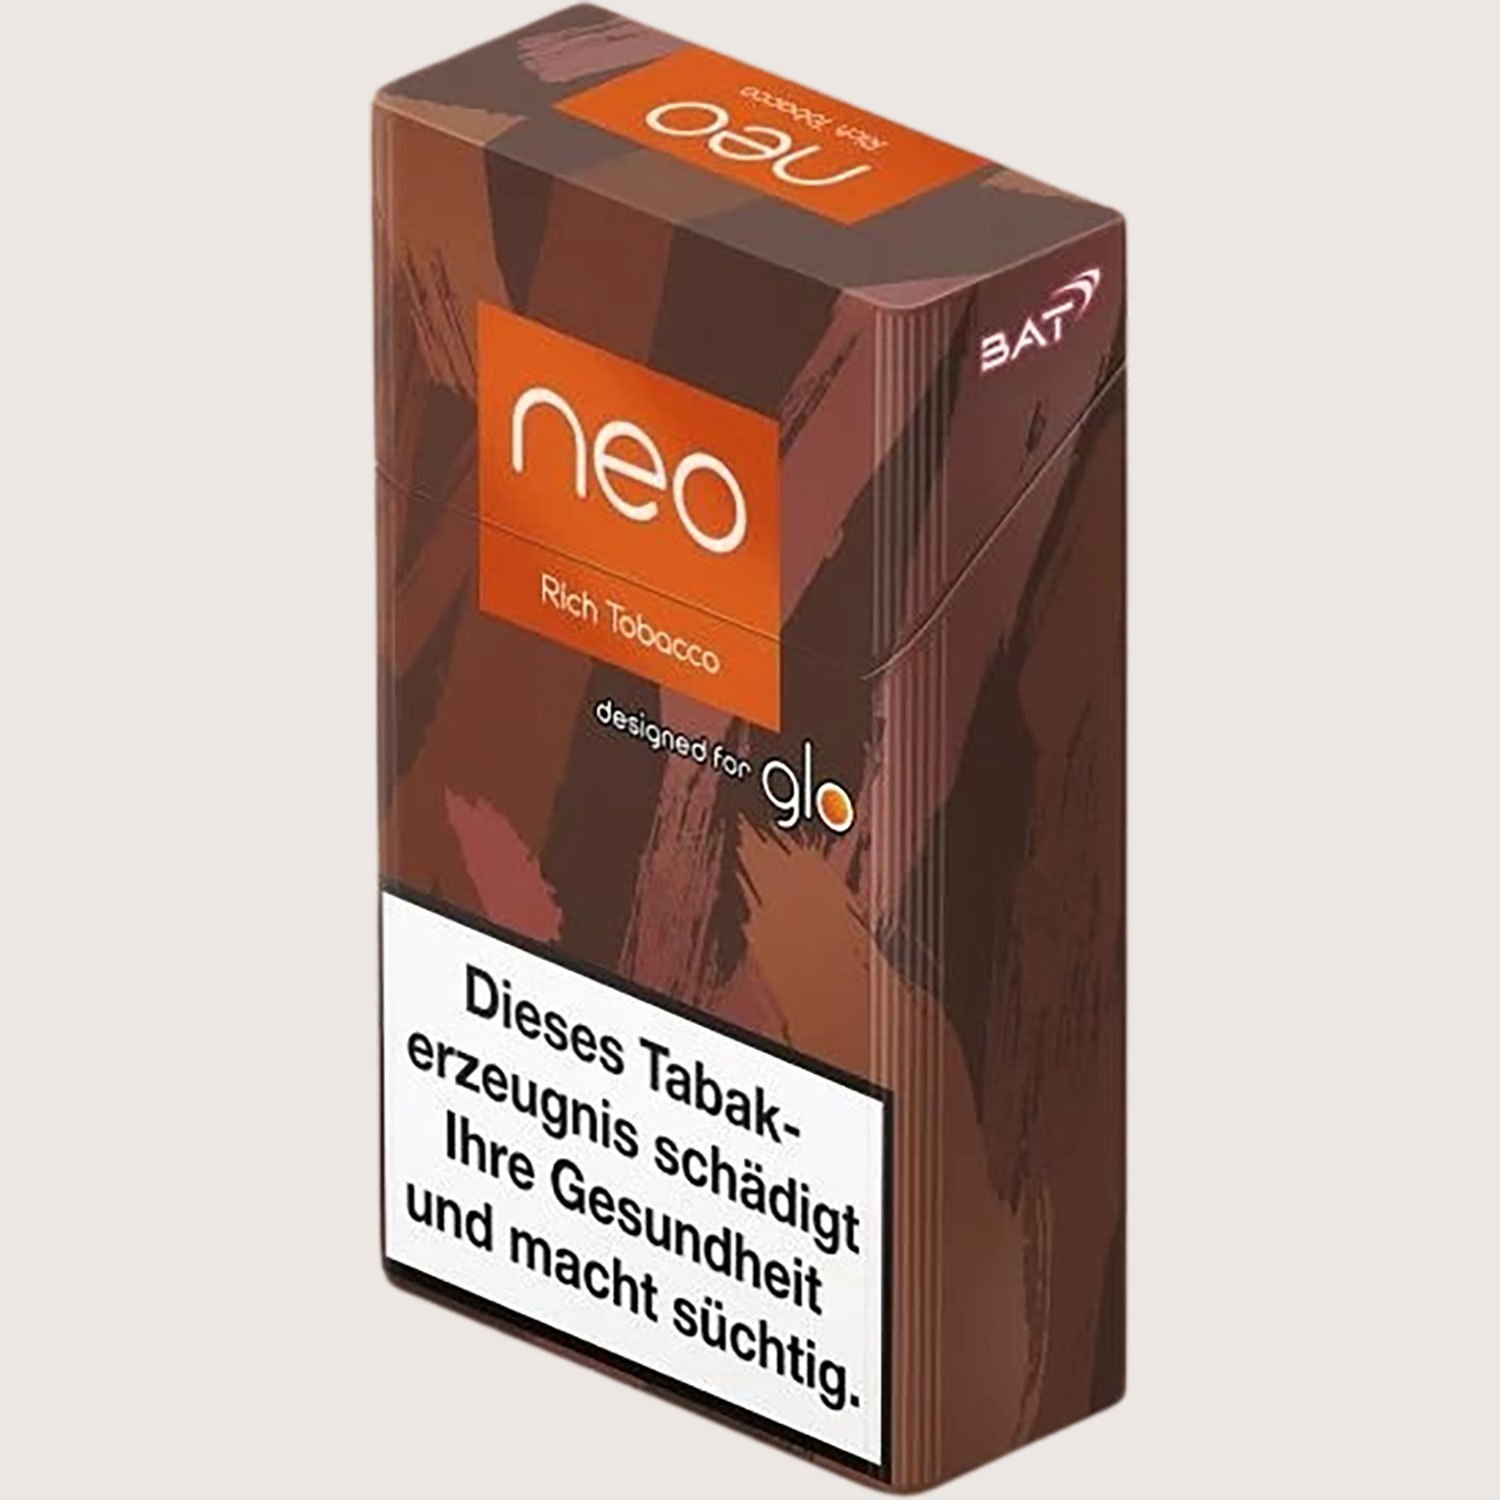 GLO Neo Rich Tobacco